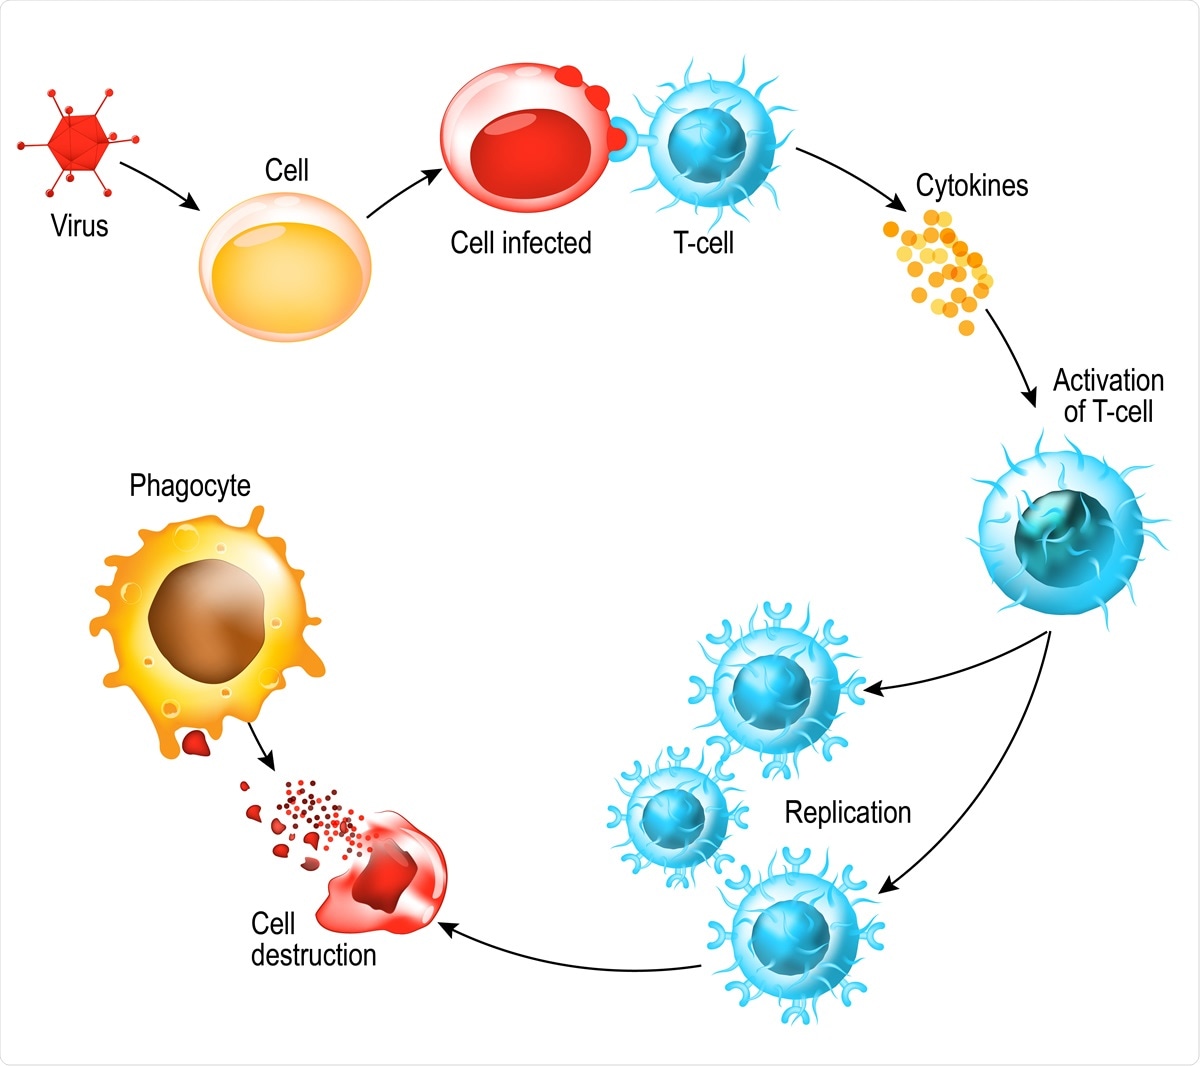 Activation des leucocytes à cellule T. Le lymphocyte T rencontre son antigène apparenté sur la surface d